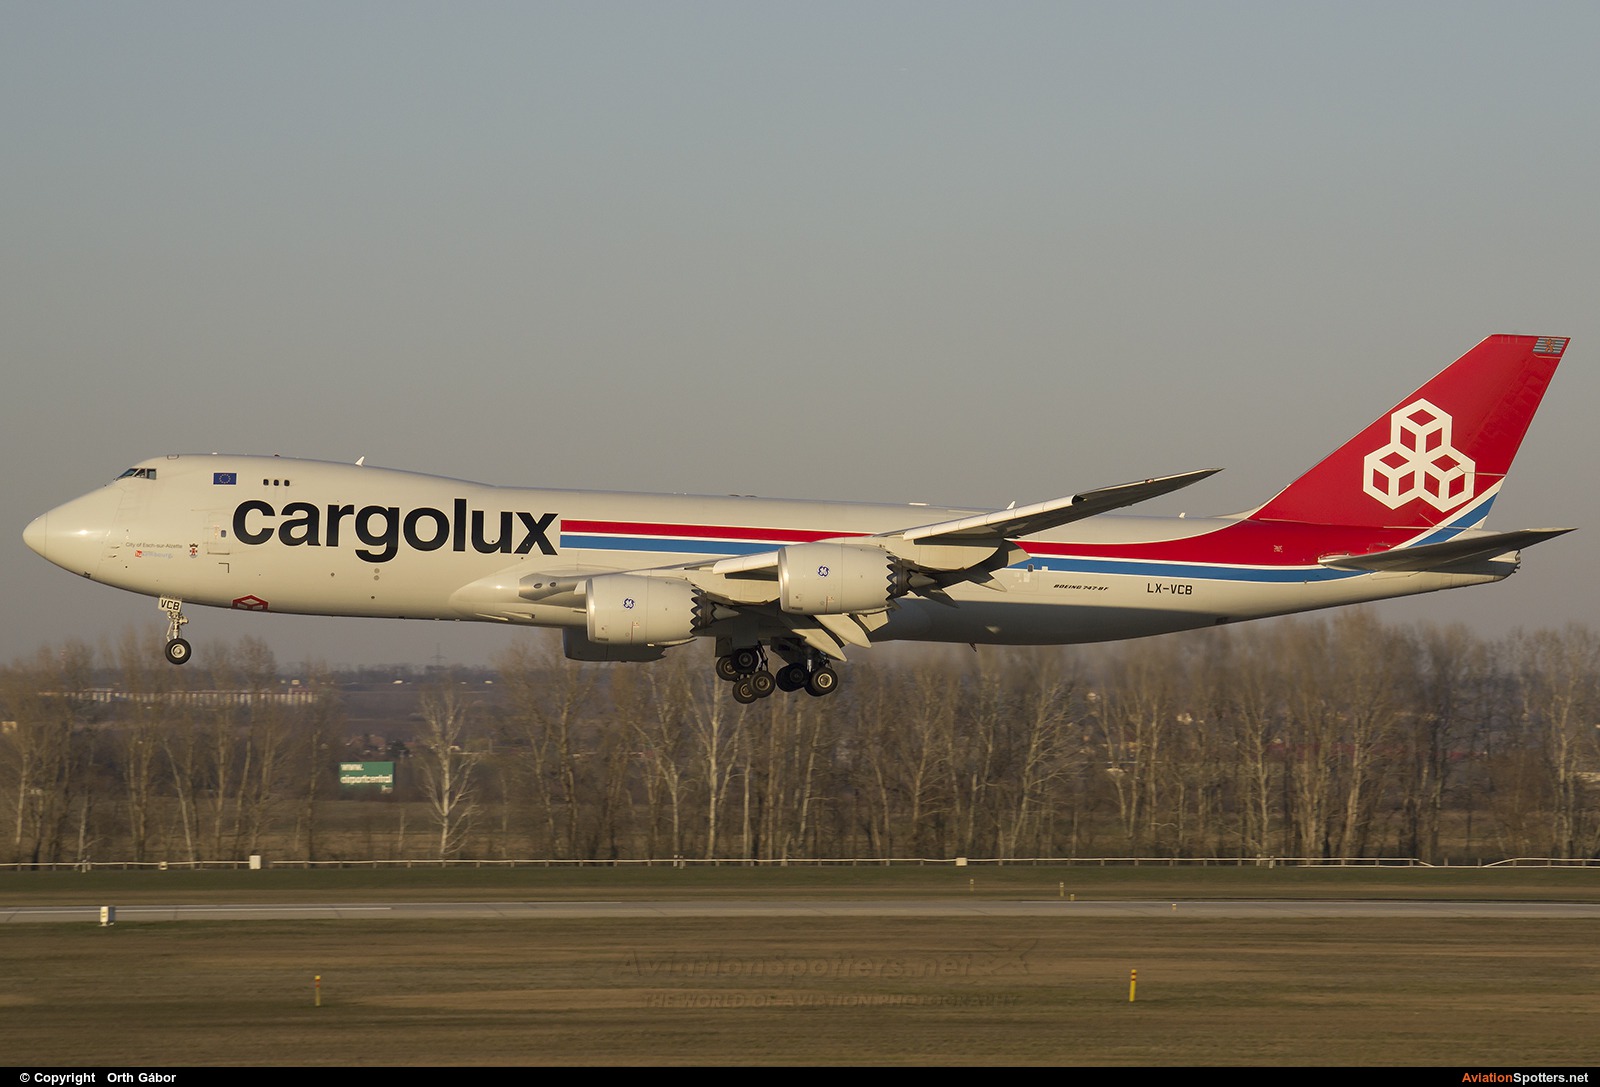 Cargolux  -  747-8F  (LX-VCB) By Orth Gábor (Roodkop)